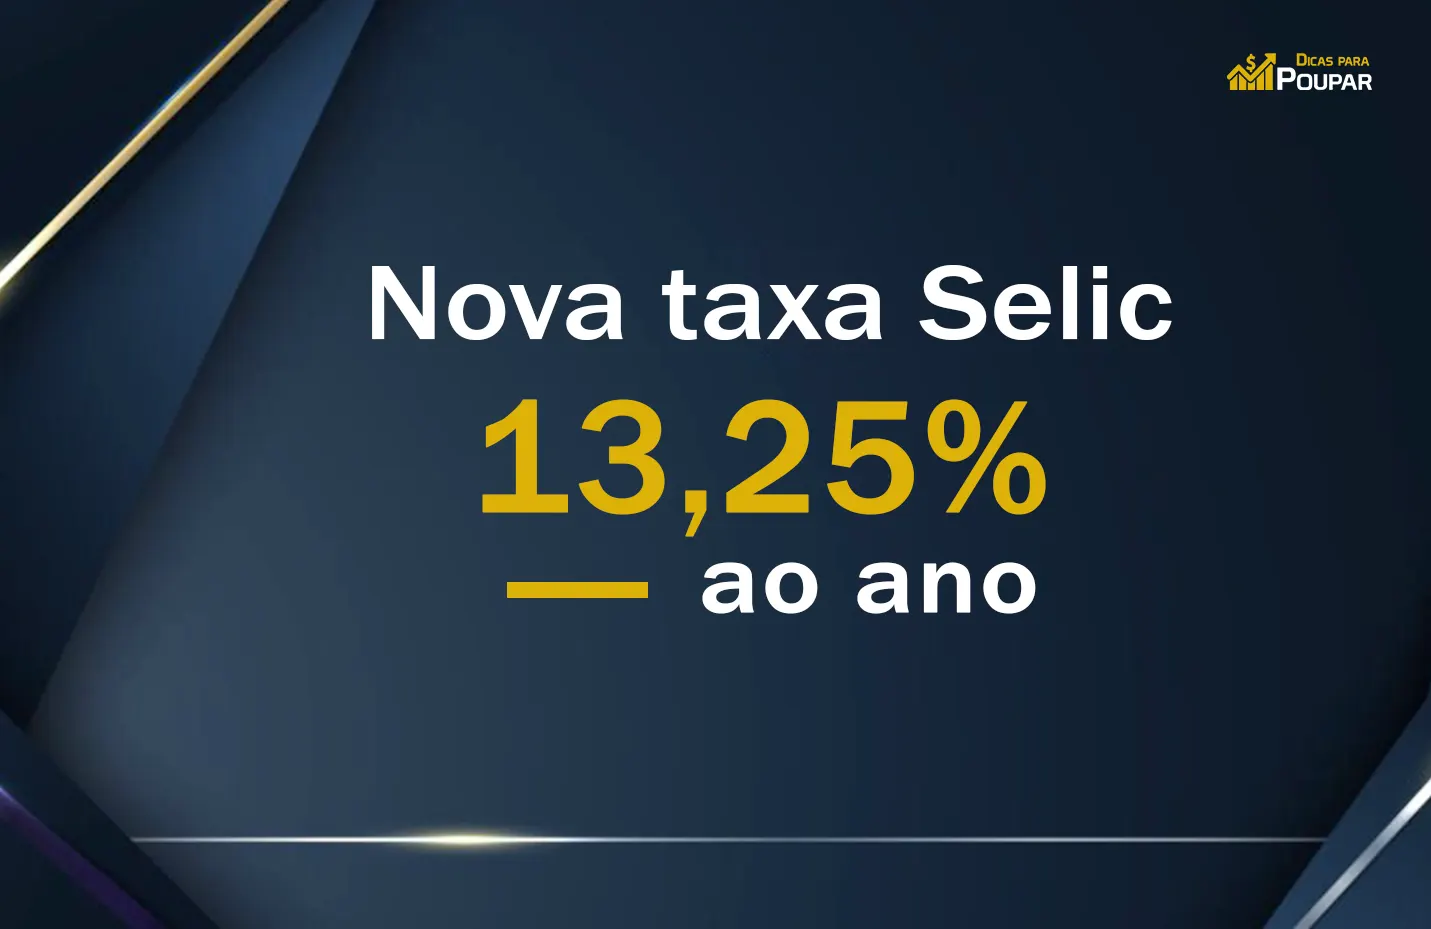 A Nova Taxa Selic de 13,25%